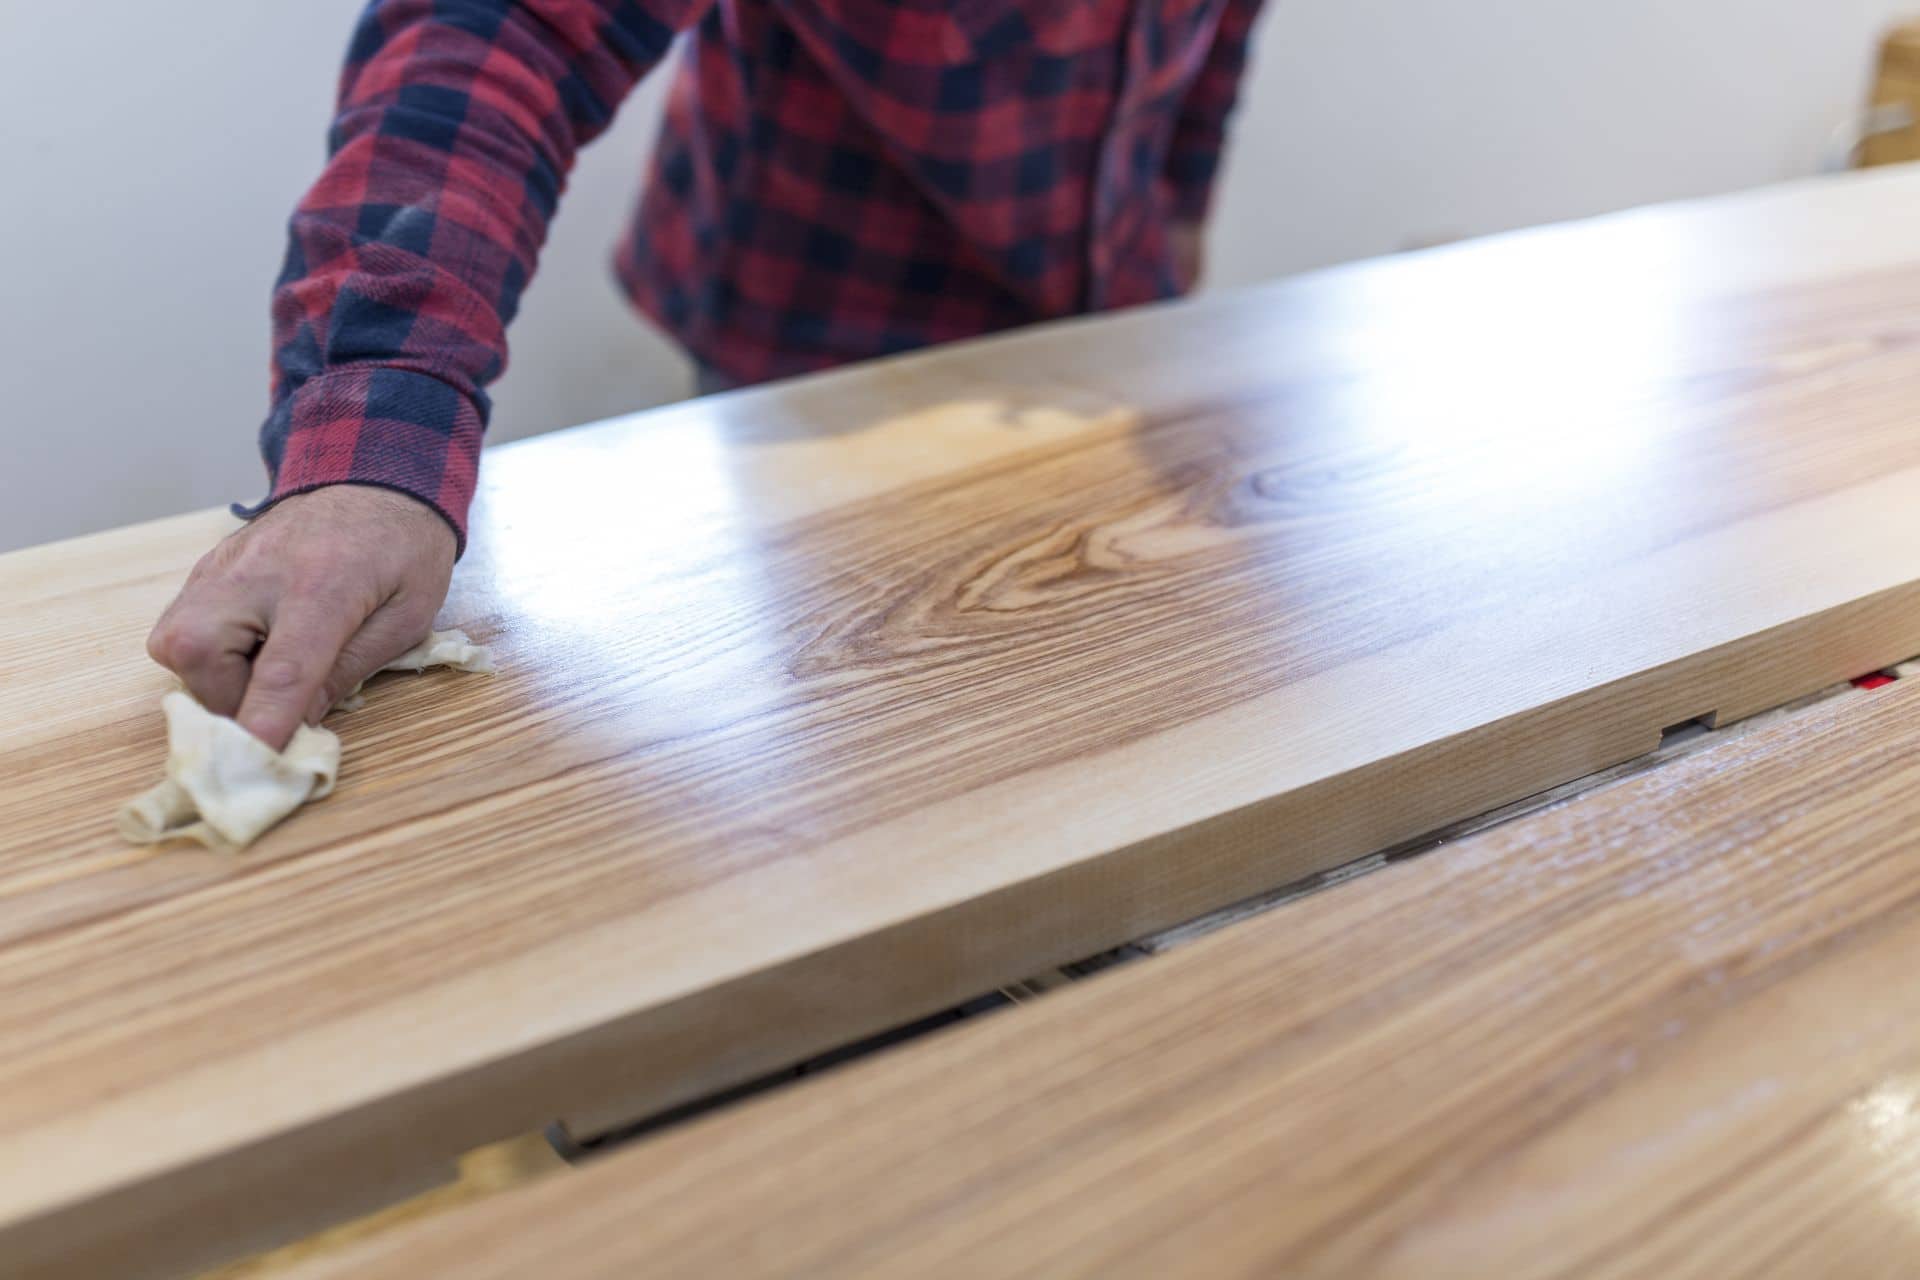 Höchste Qualität bei der Herstellung und Bearbeitung der Holzmöbel